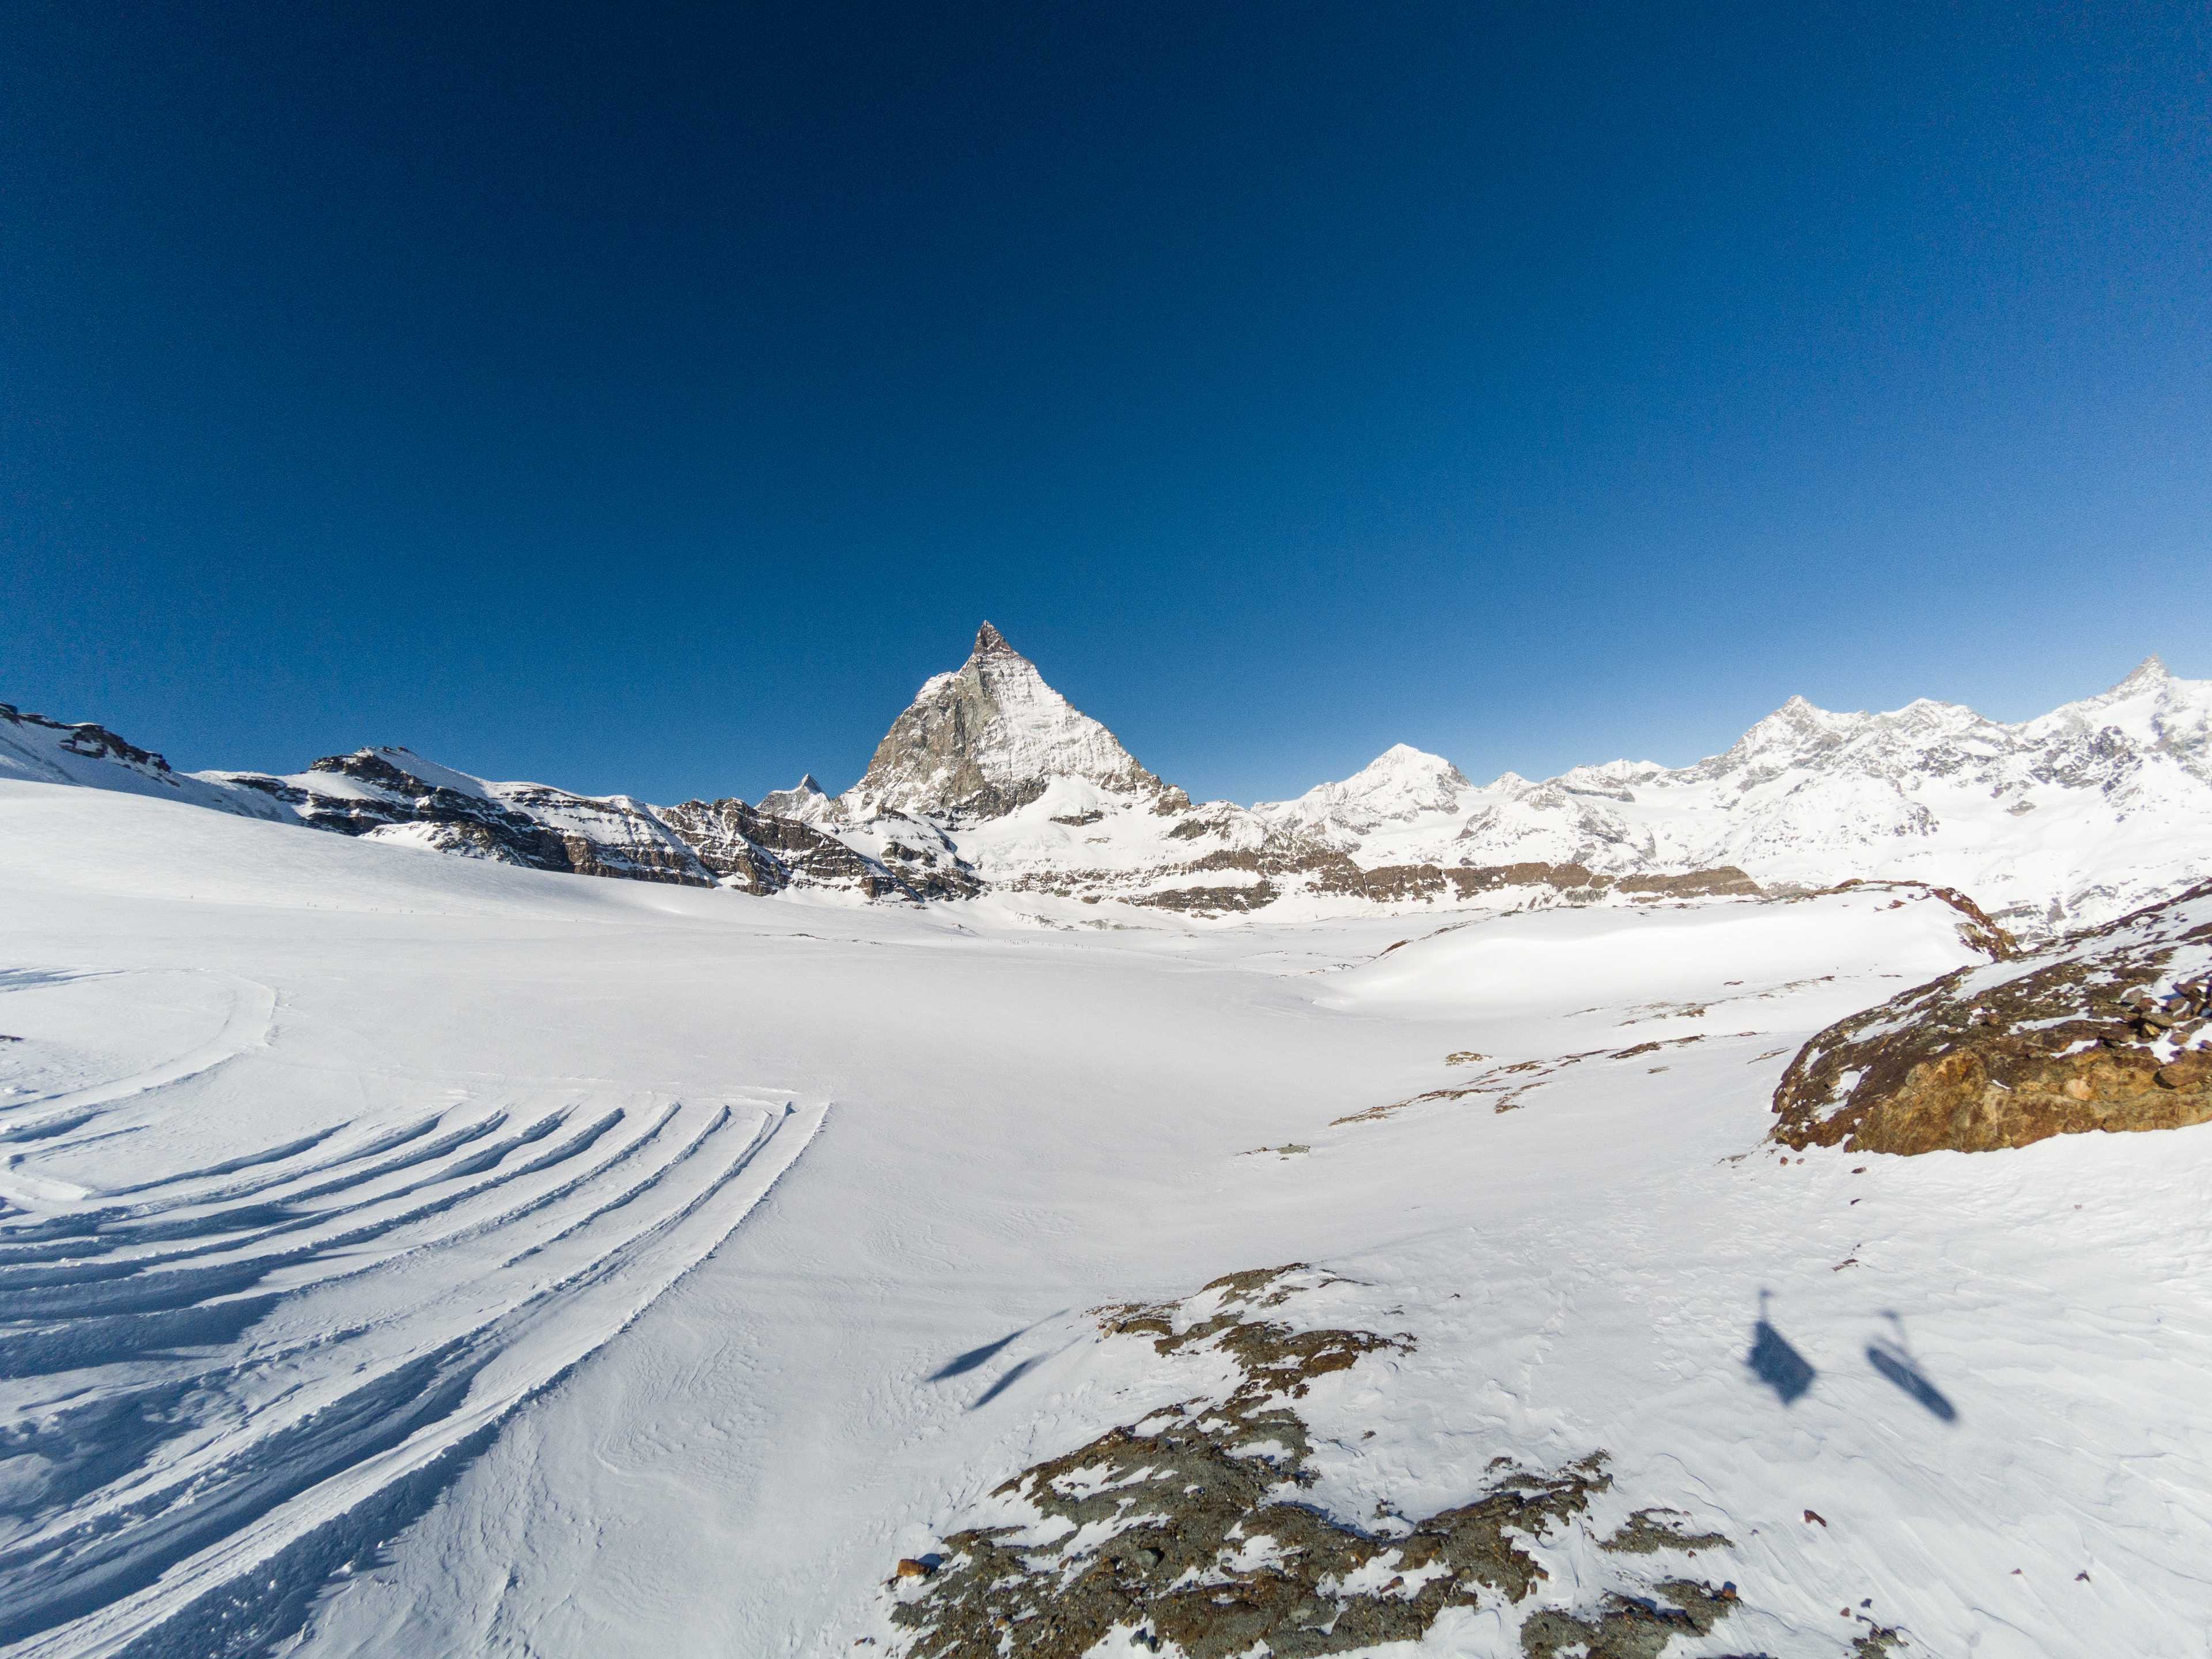 Matterhorn seen from Furgsattel, Zermatt